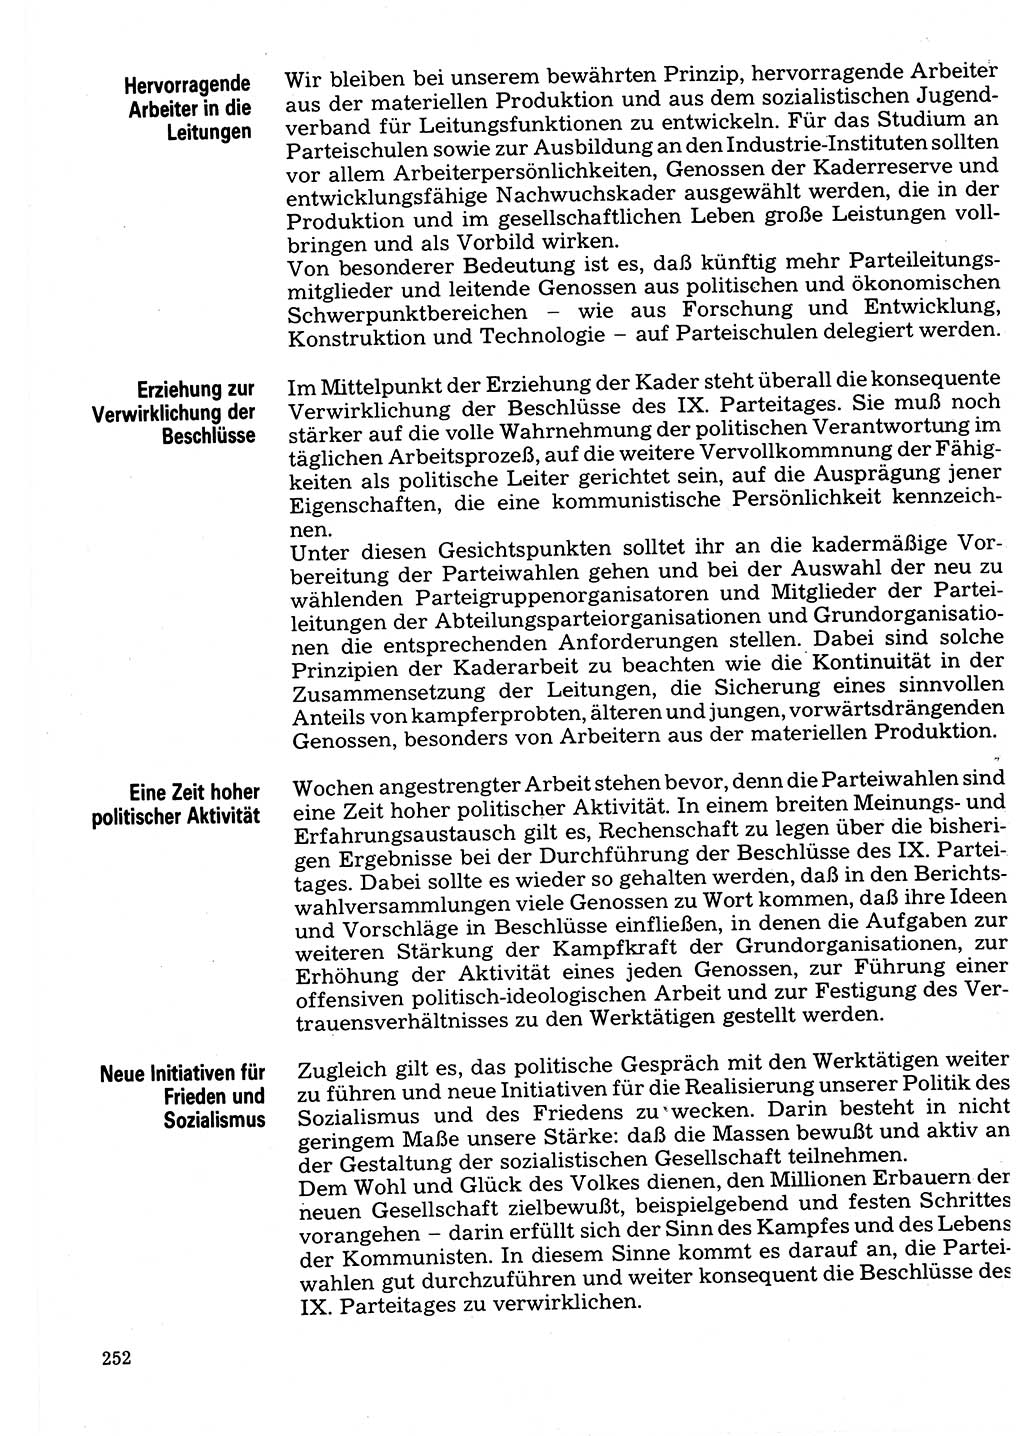 Neuer Weg (NW), Organ des Zentralkomitees (ZK) der SED (Sozialistische Einheitspartei Deutschlands) für Fragen des Parteilebens, 32. Jahrgang [Deutsche Demokratische Republik (DDR)] 1977, Seite 252 (NW ZK SED DDR 1977, S. 252)